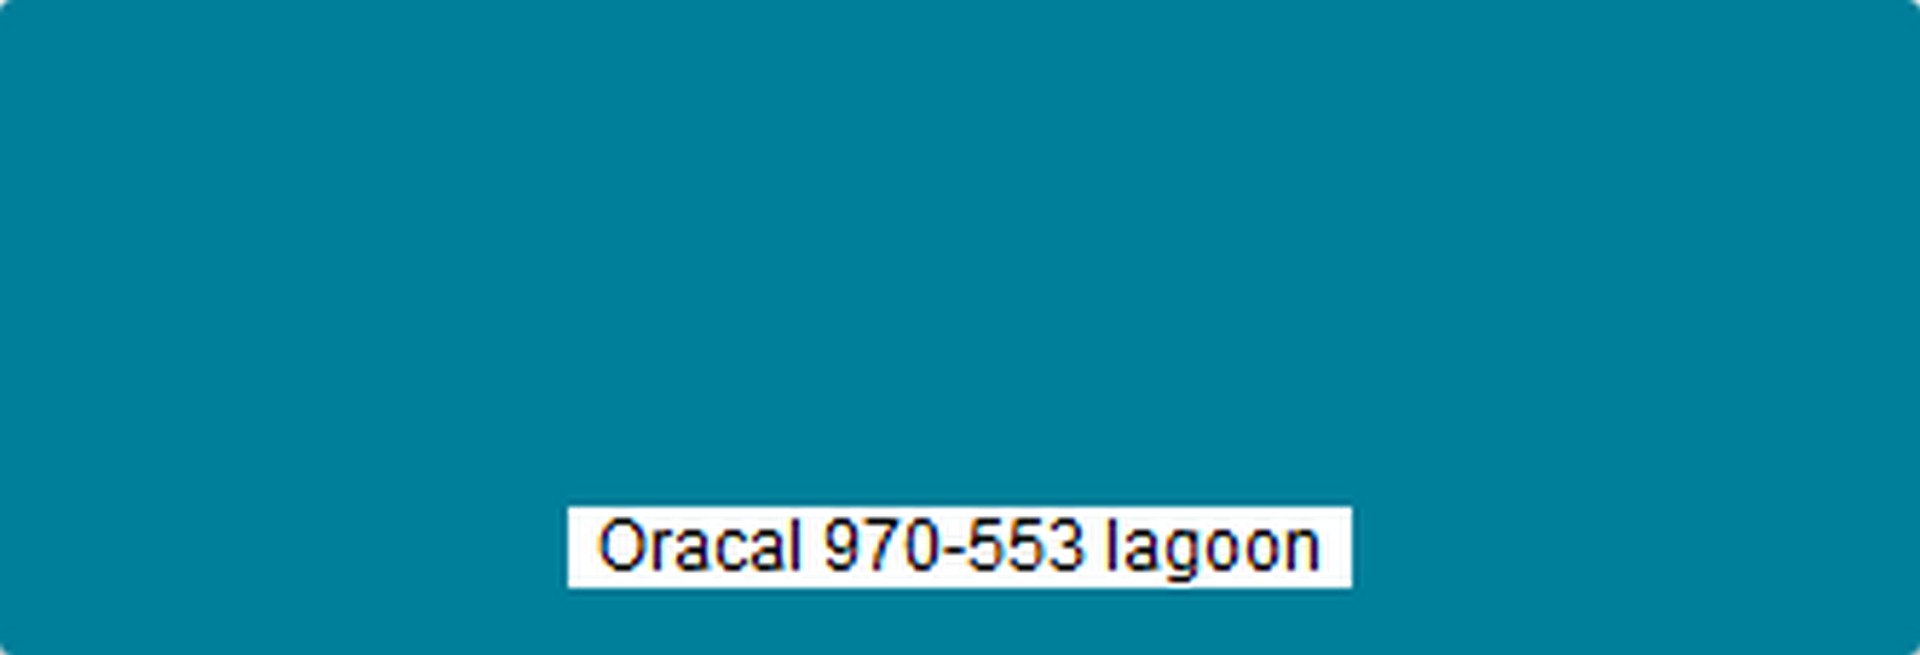 ORCAL 970-553